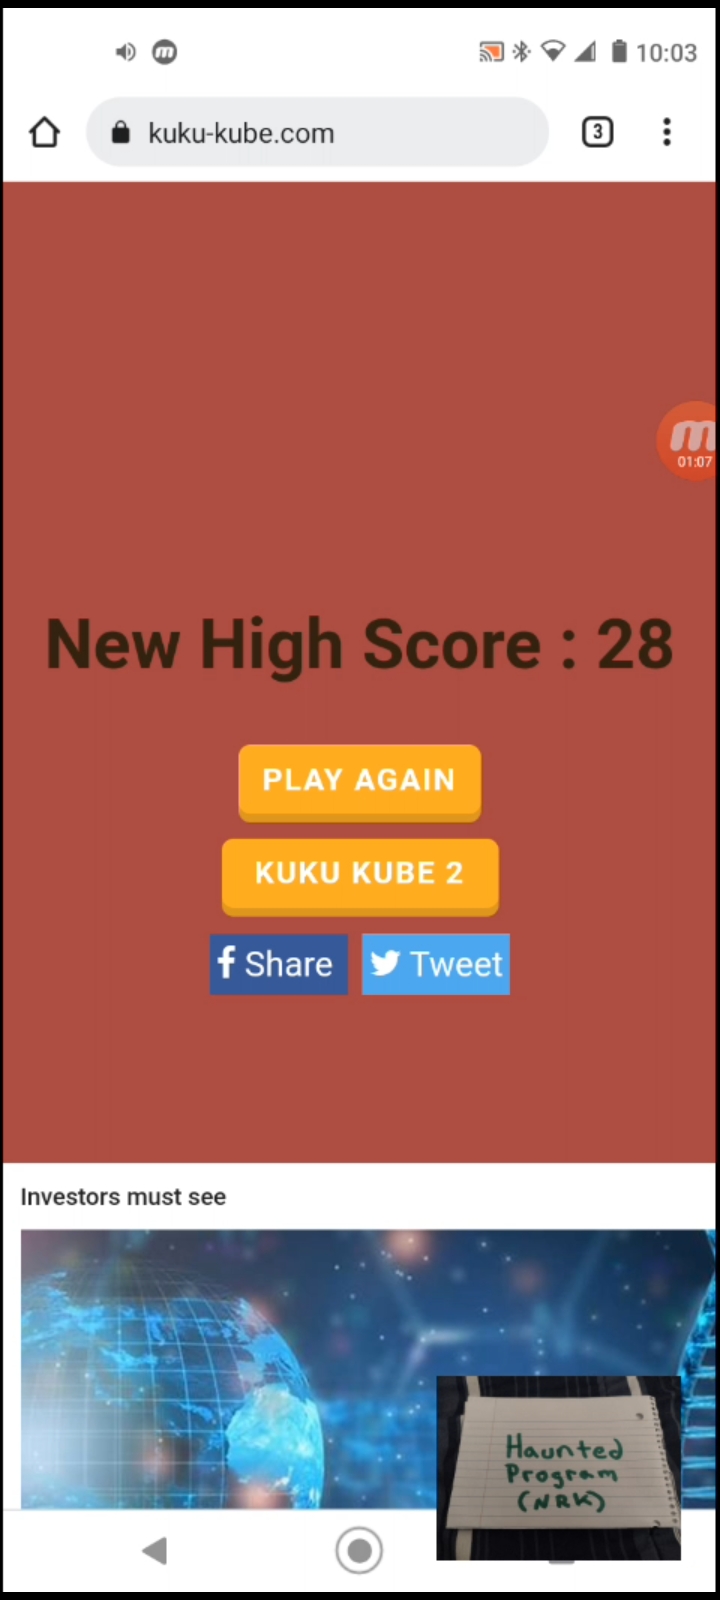 kuku-kube.com 28 points